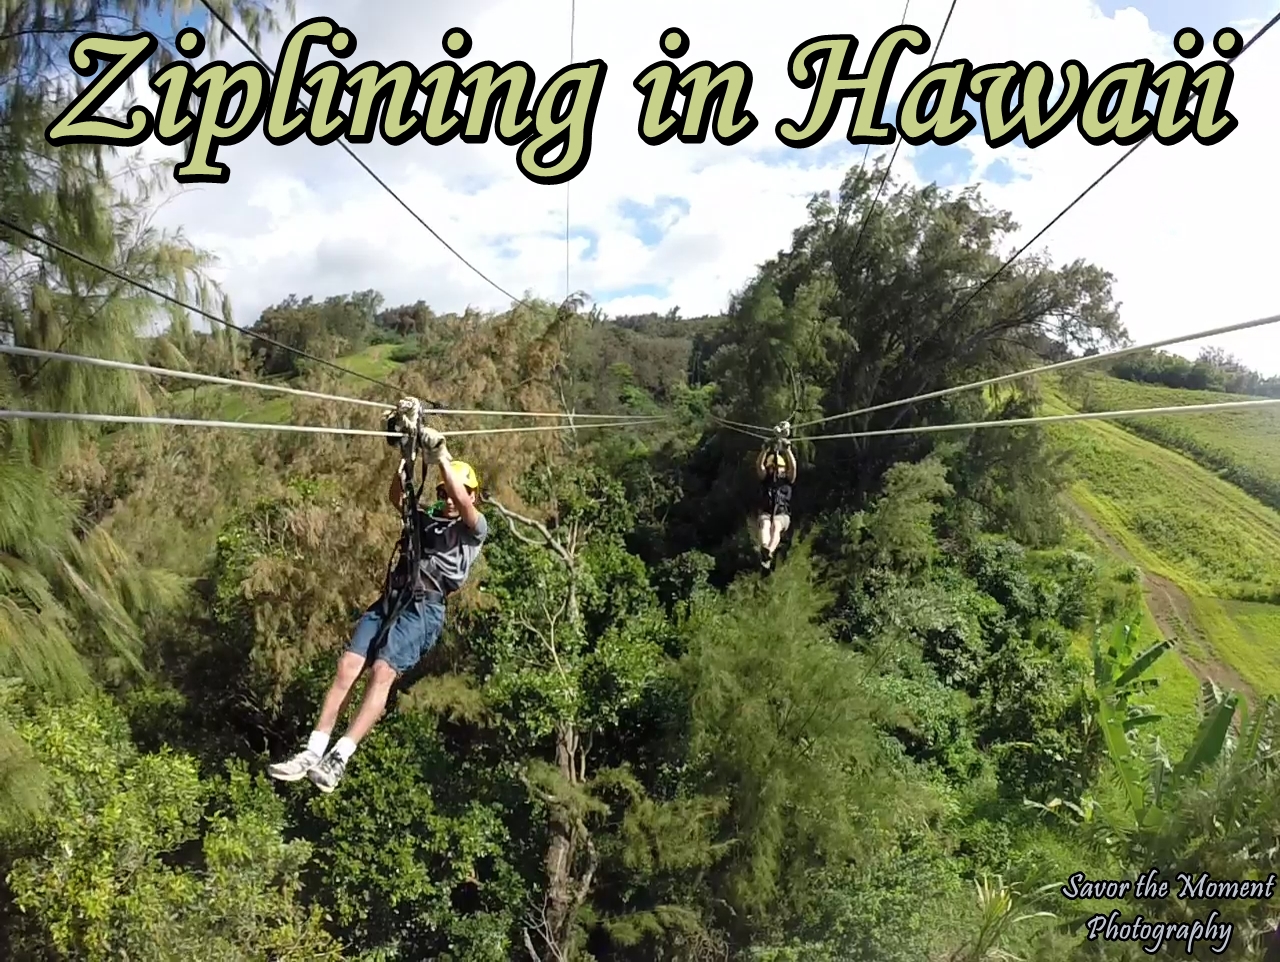 Ziplining in Hawaii